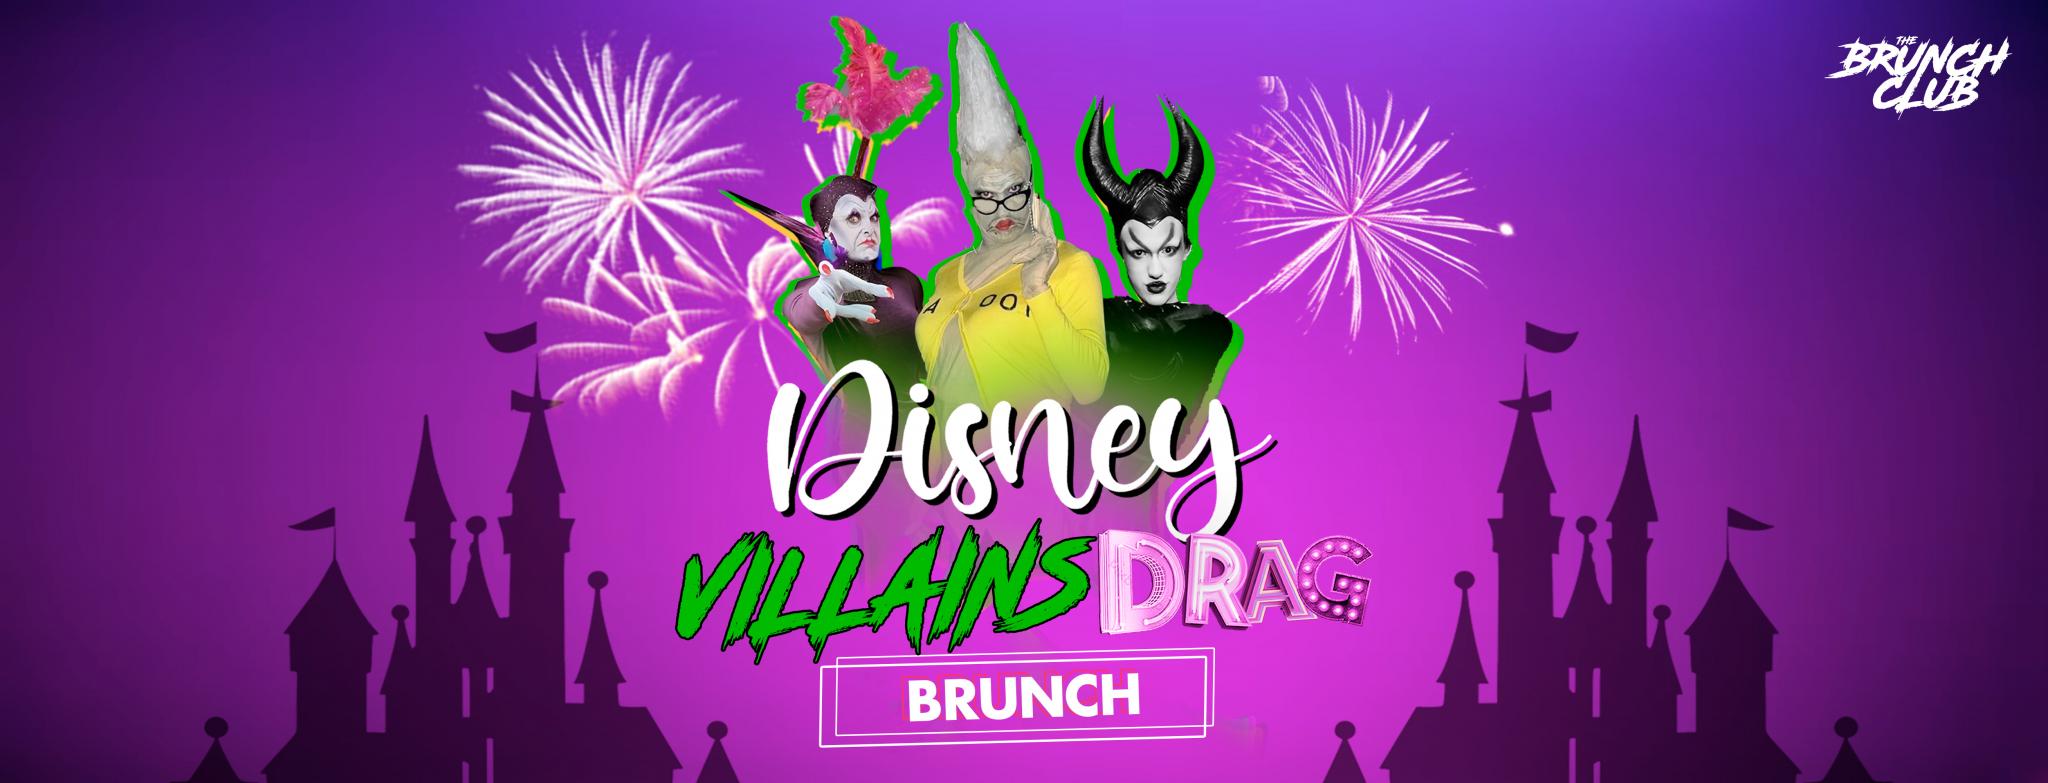 Disney Villains Drag Bottomless Brunch - Cheltenham